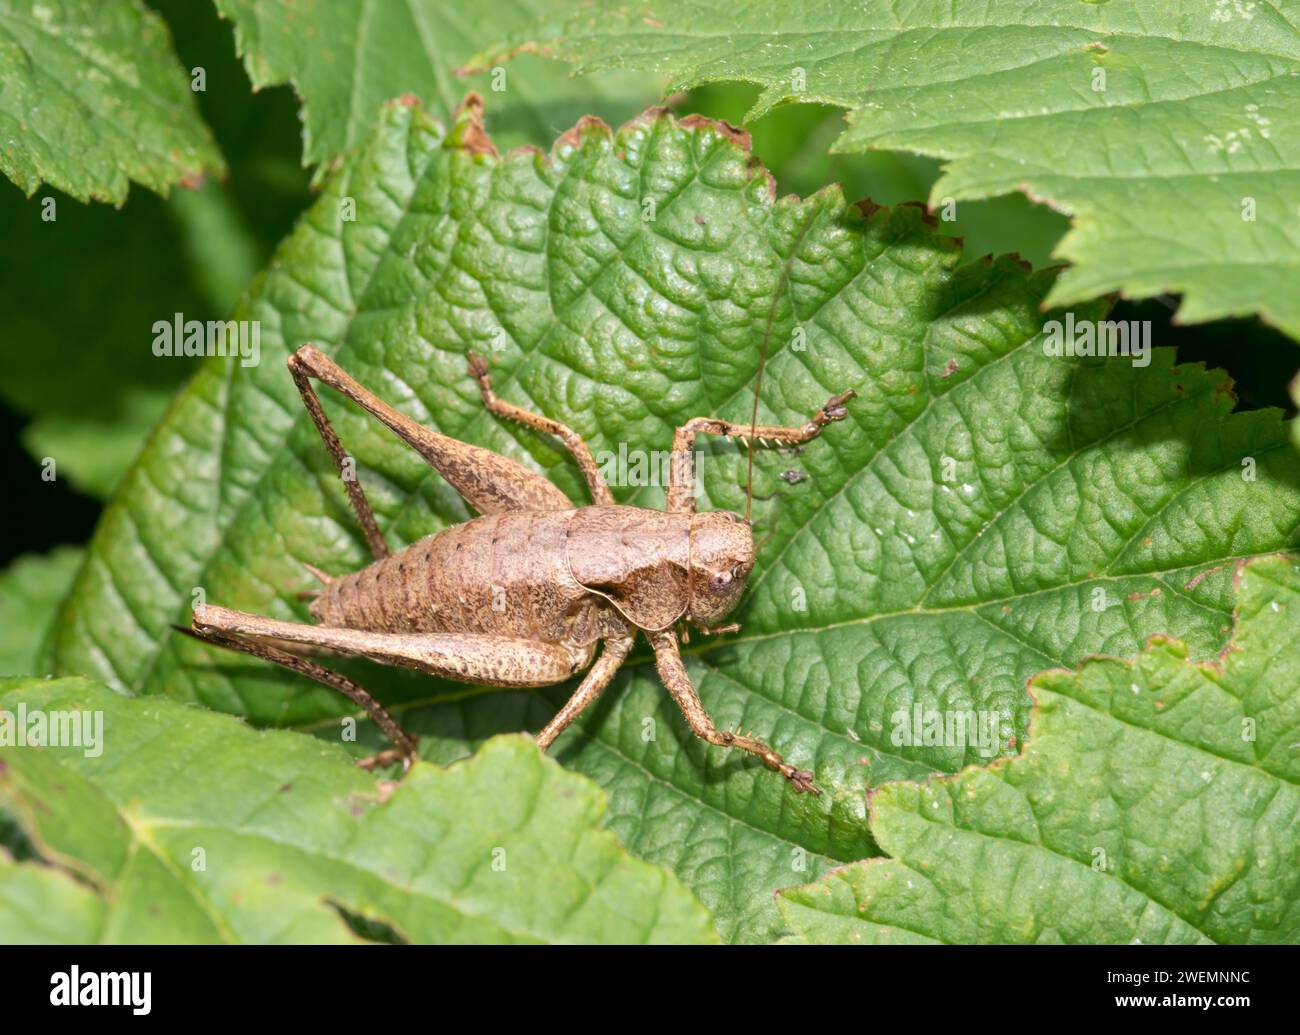 Dark bush-cricket (Pholidoptera griseoaptera) or common bush cricket, female, sitting on bramble leaf (Rubus sect. Rubus), macro photo, close-up Stock Photo